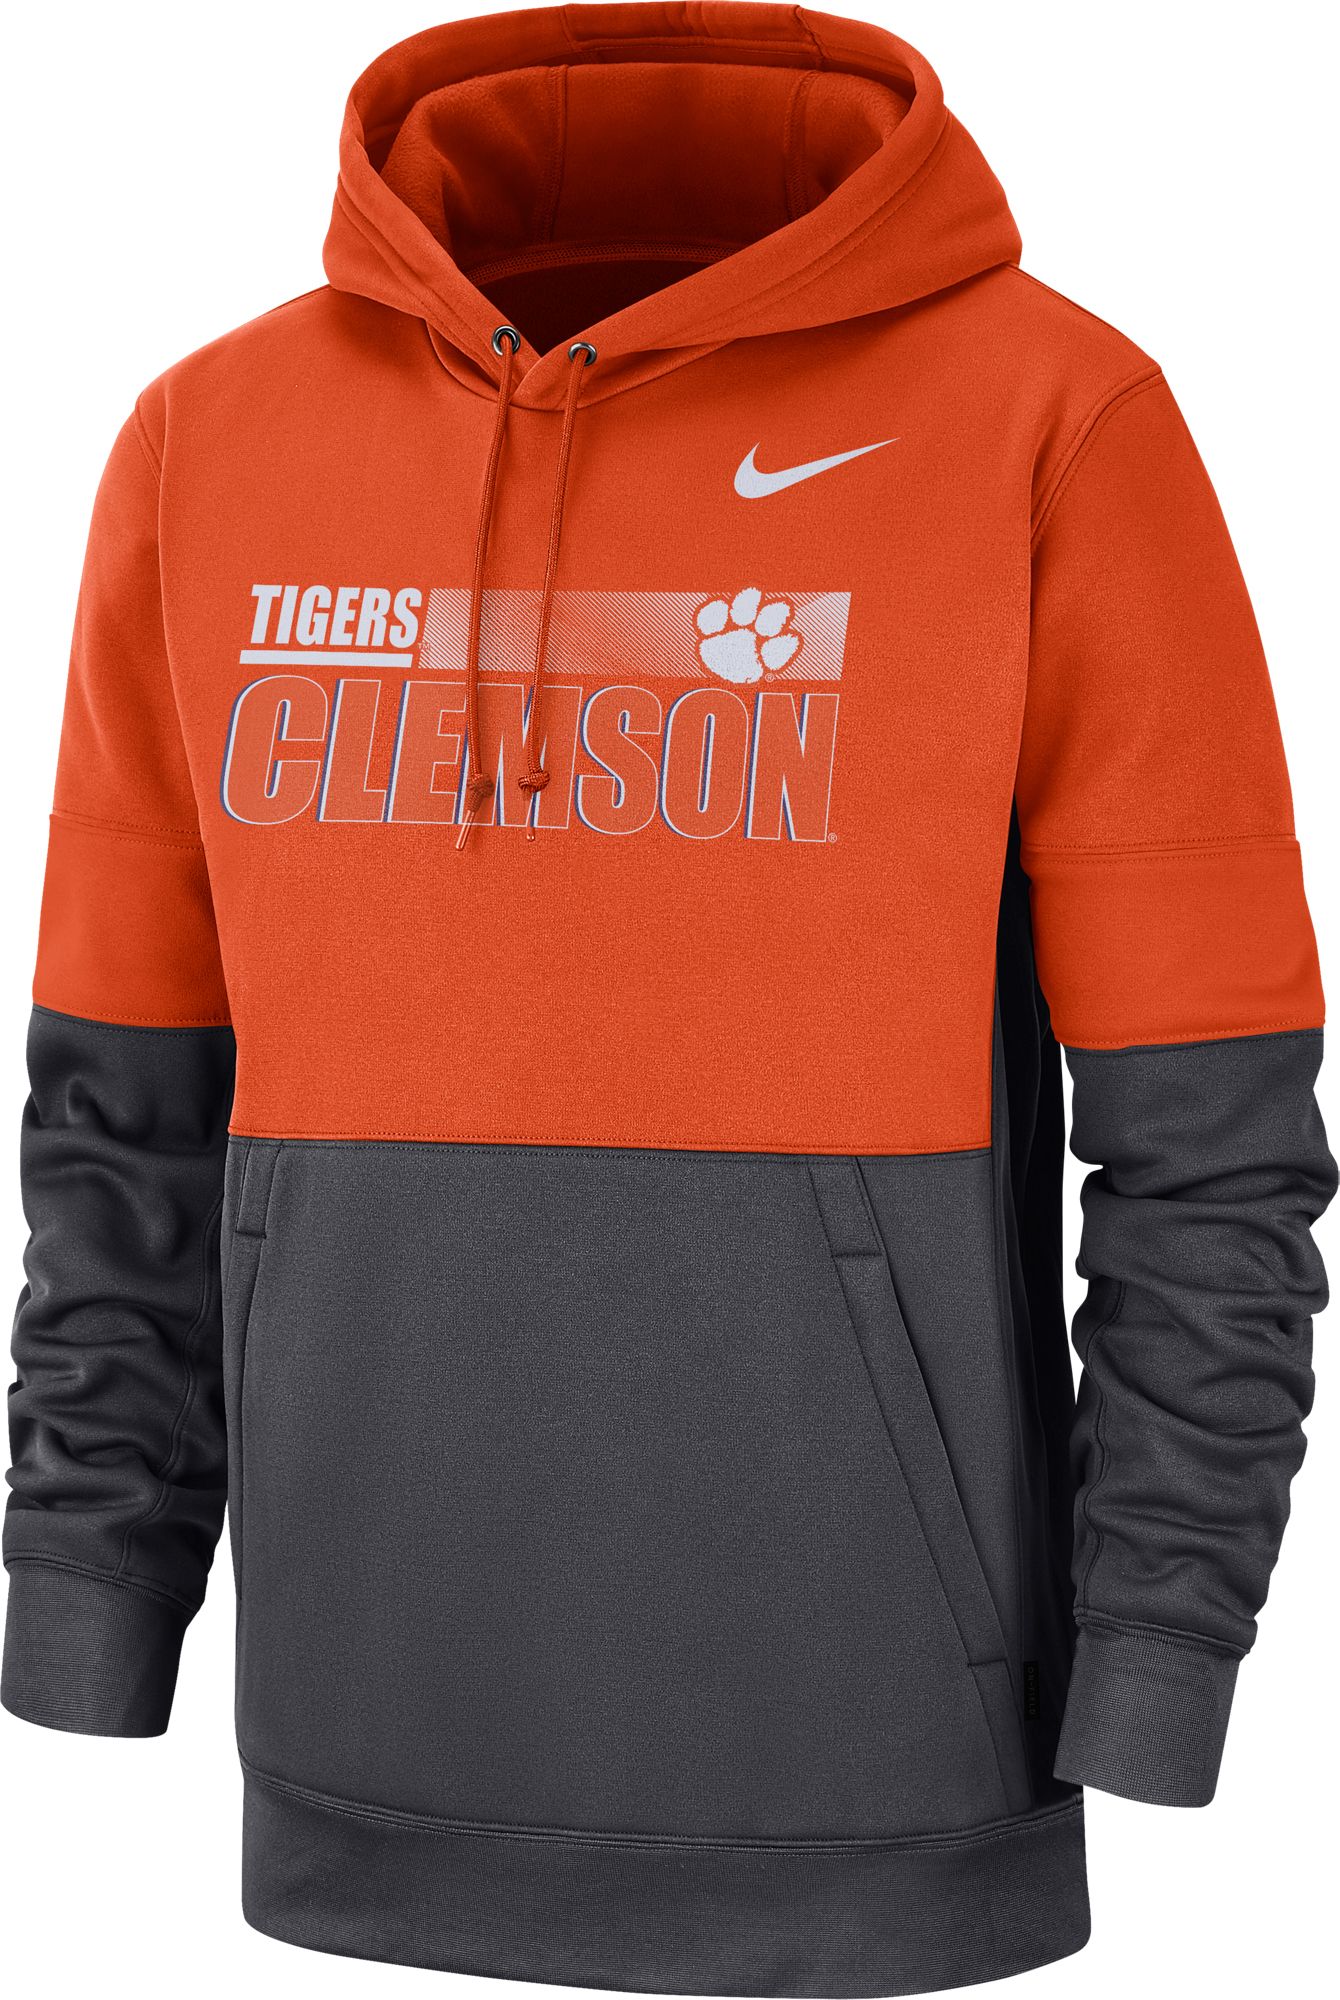 clemson tigers nike hoodie